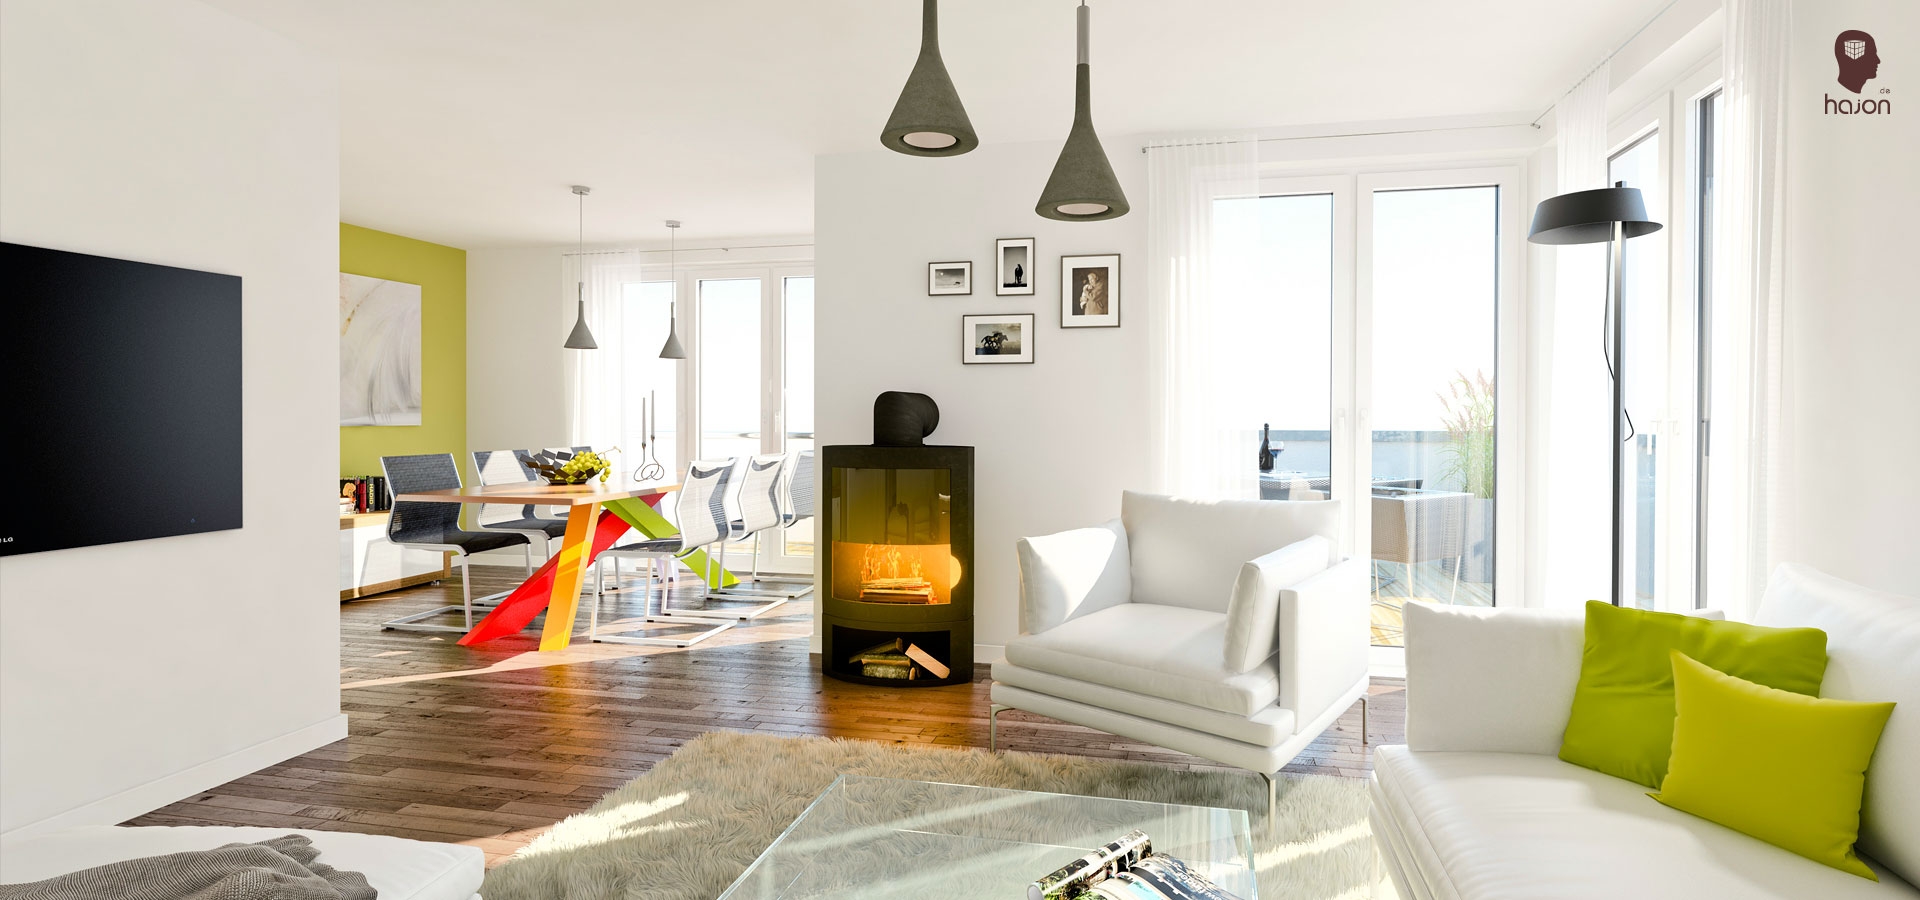 3D Visualisierung | Innenraum | Wohnzimmer mit Essecke